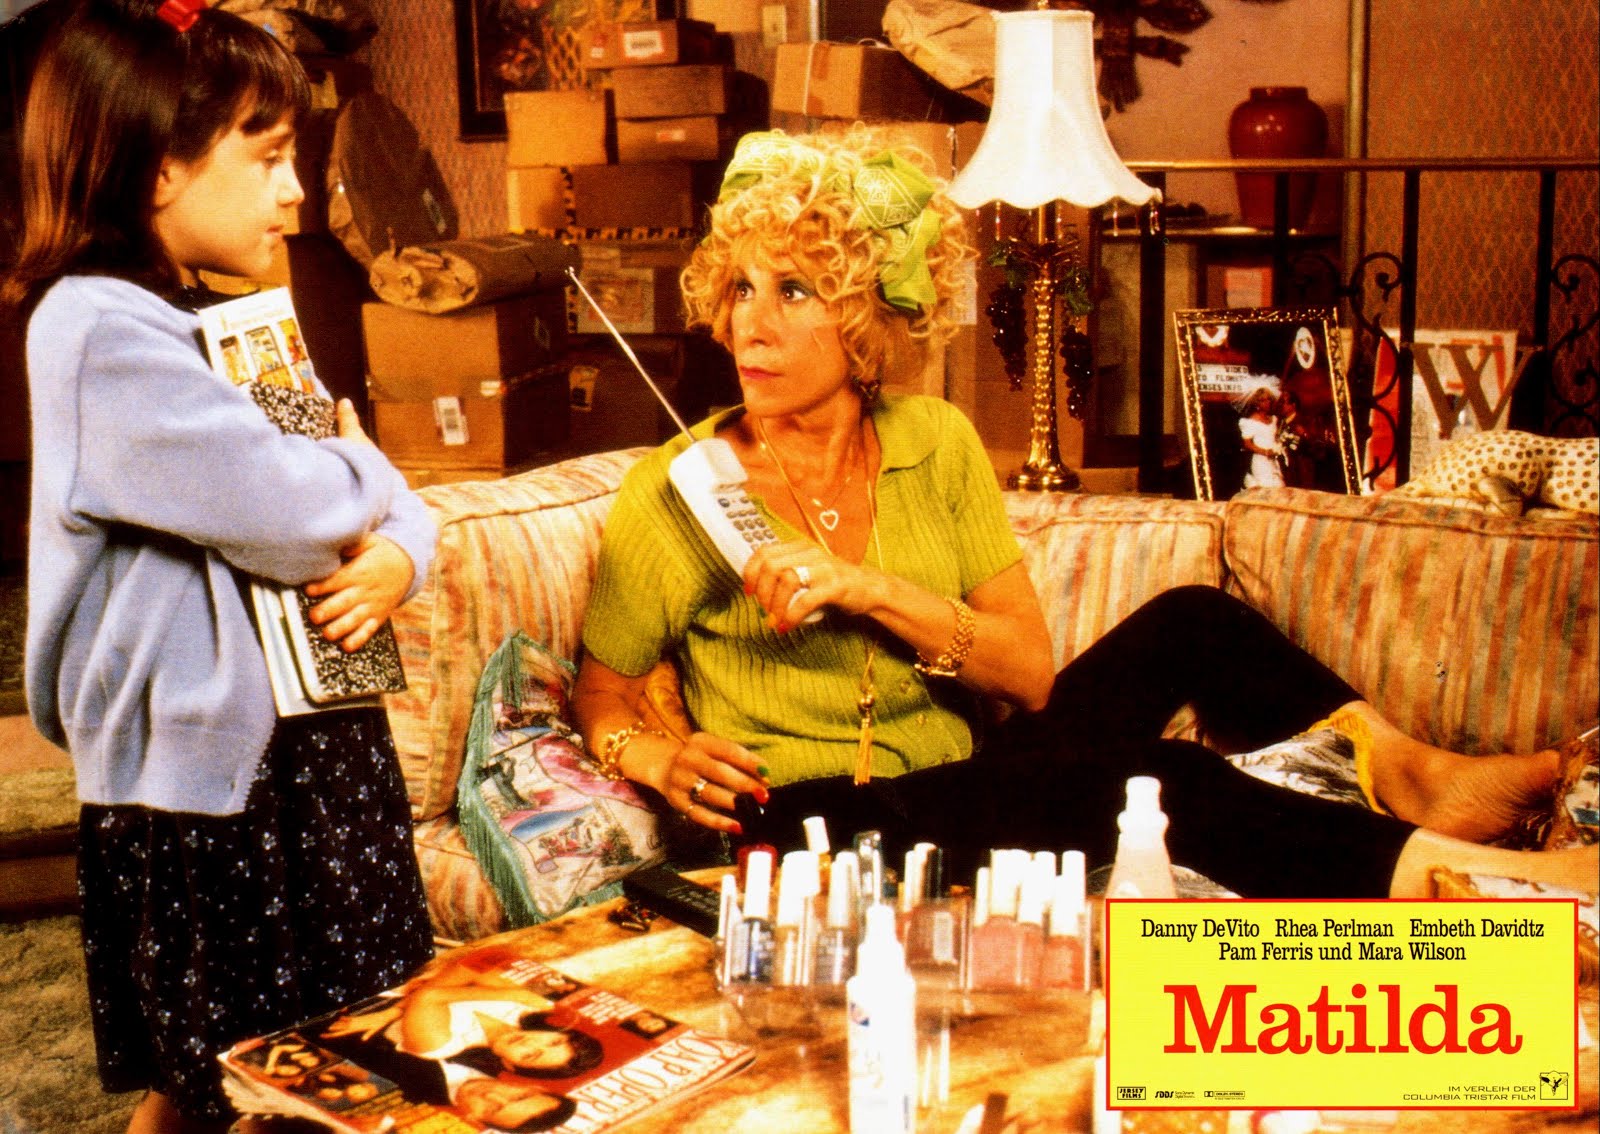 Matilda (1996) Danny DeVito - Matilda